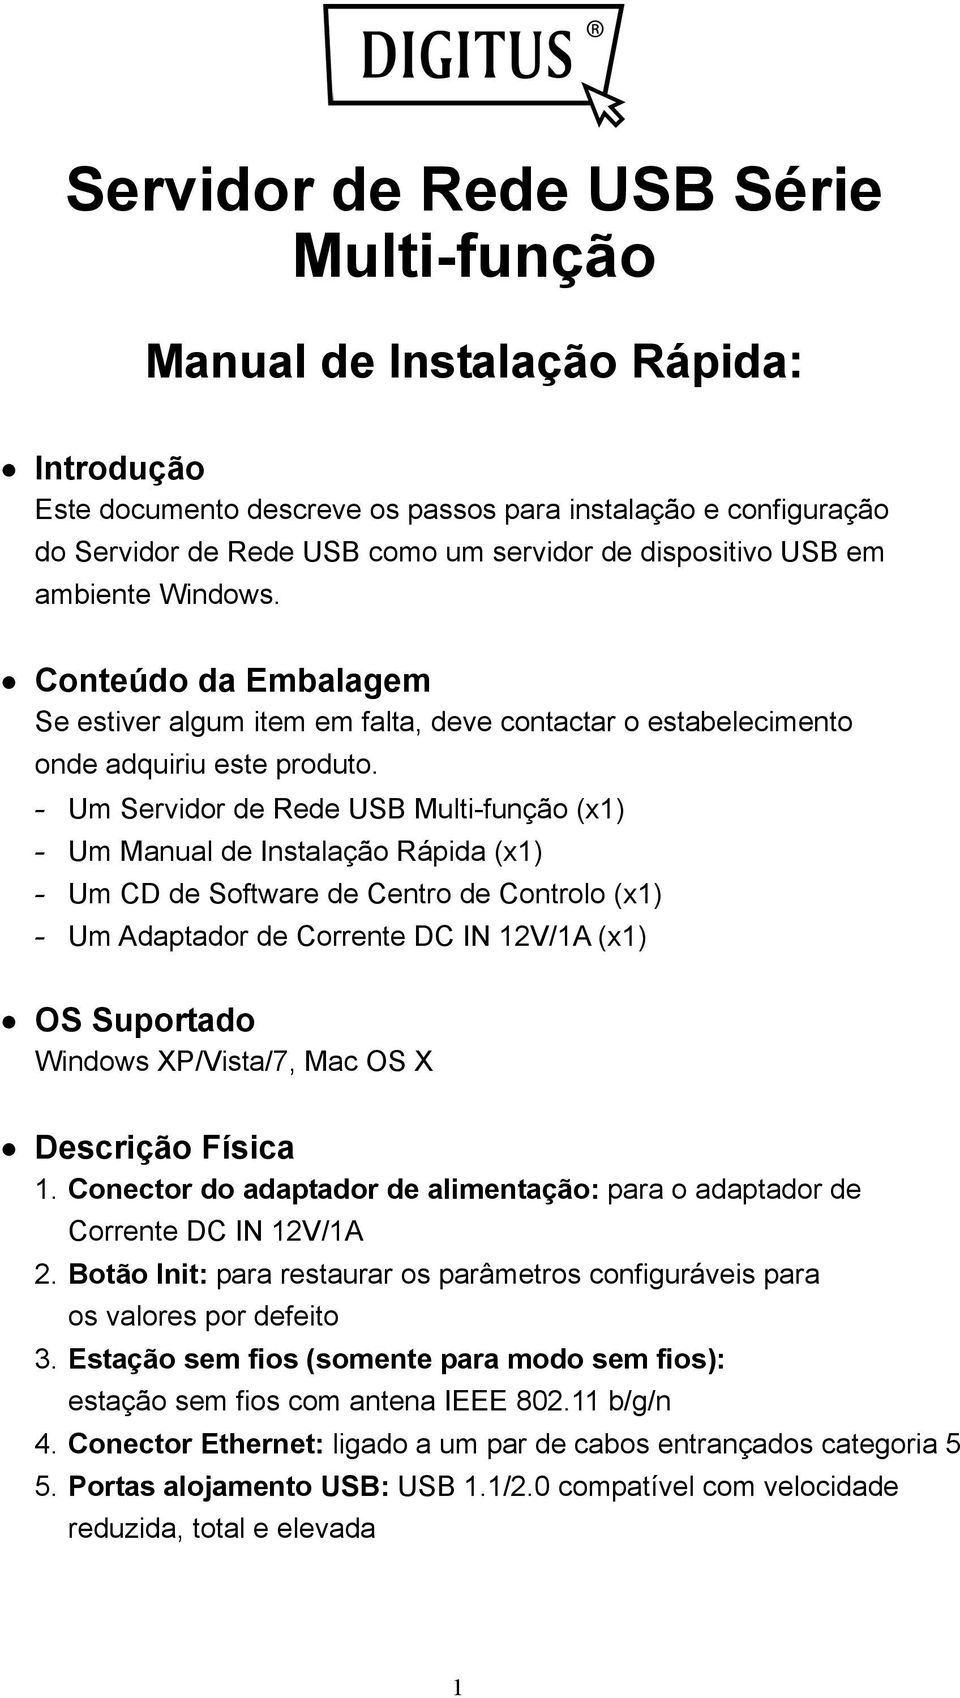 - Um Servidor de Rede USB Multi-função (x1) - Um Manual de Instalação Rápida (x1) - Um CD de Software de Centro de Controlo (x1) - Um Adaptador de Corrente DC IN 12V/1A (x1) OS Suportado Windows